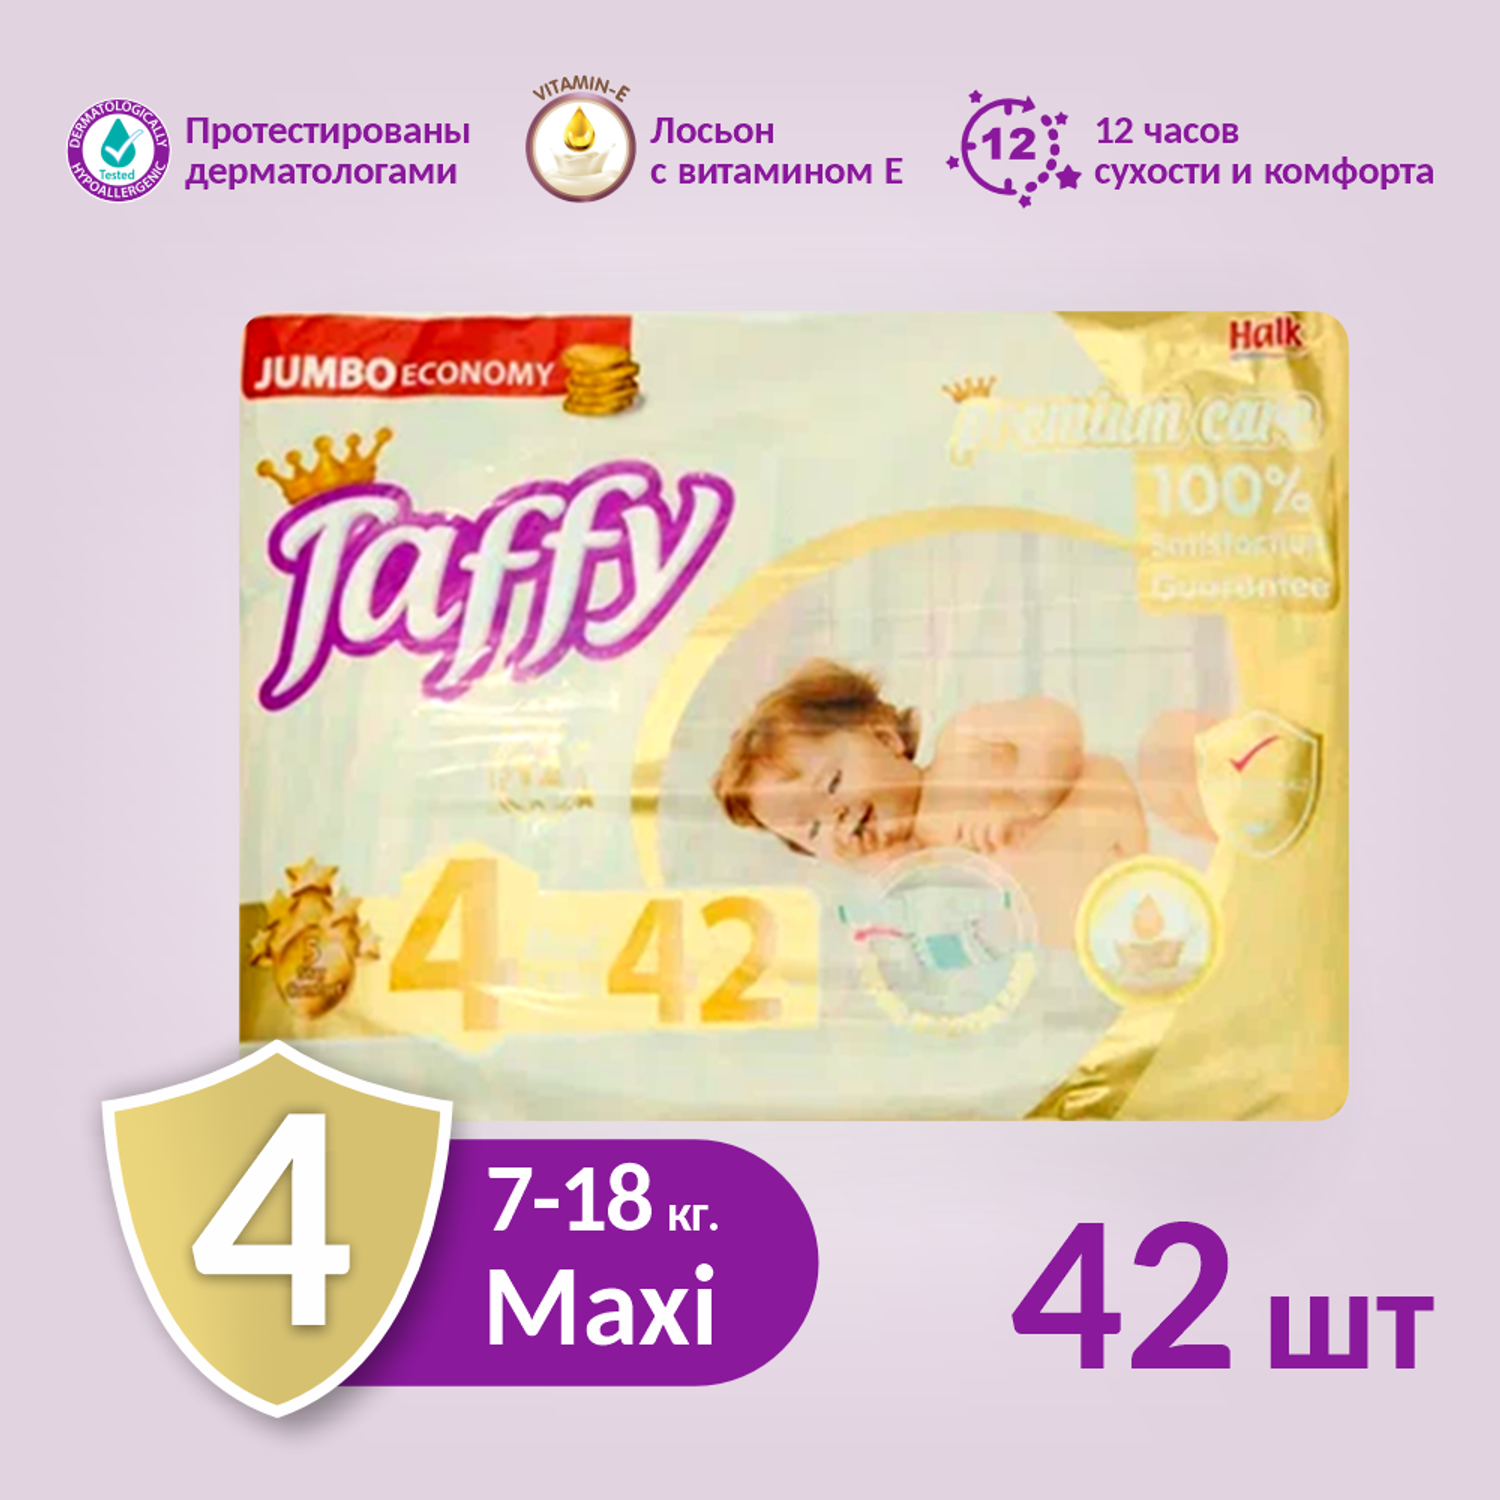 Подгузник одноразовый Taffy Premium Care Maxi (7-18 кг.) 42шт. - фото 2